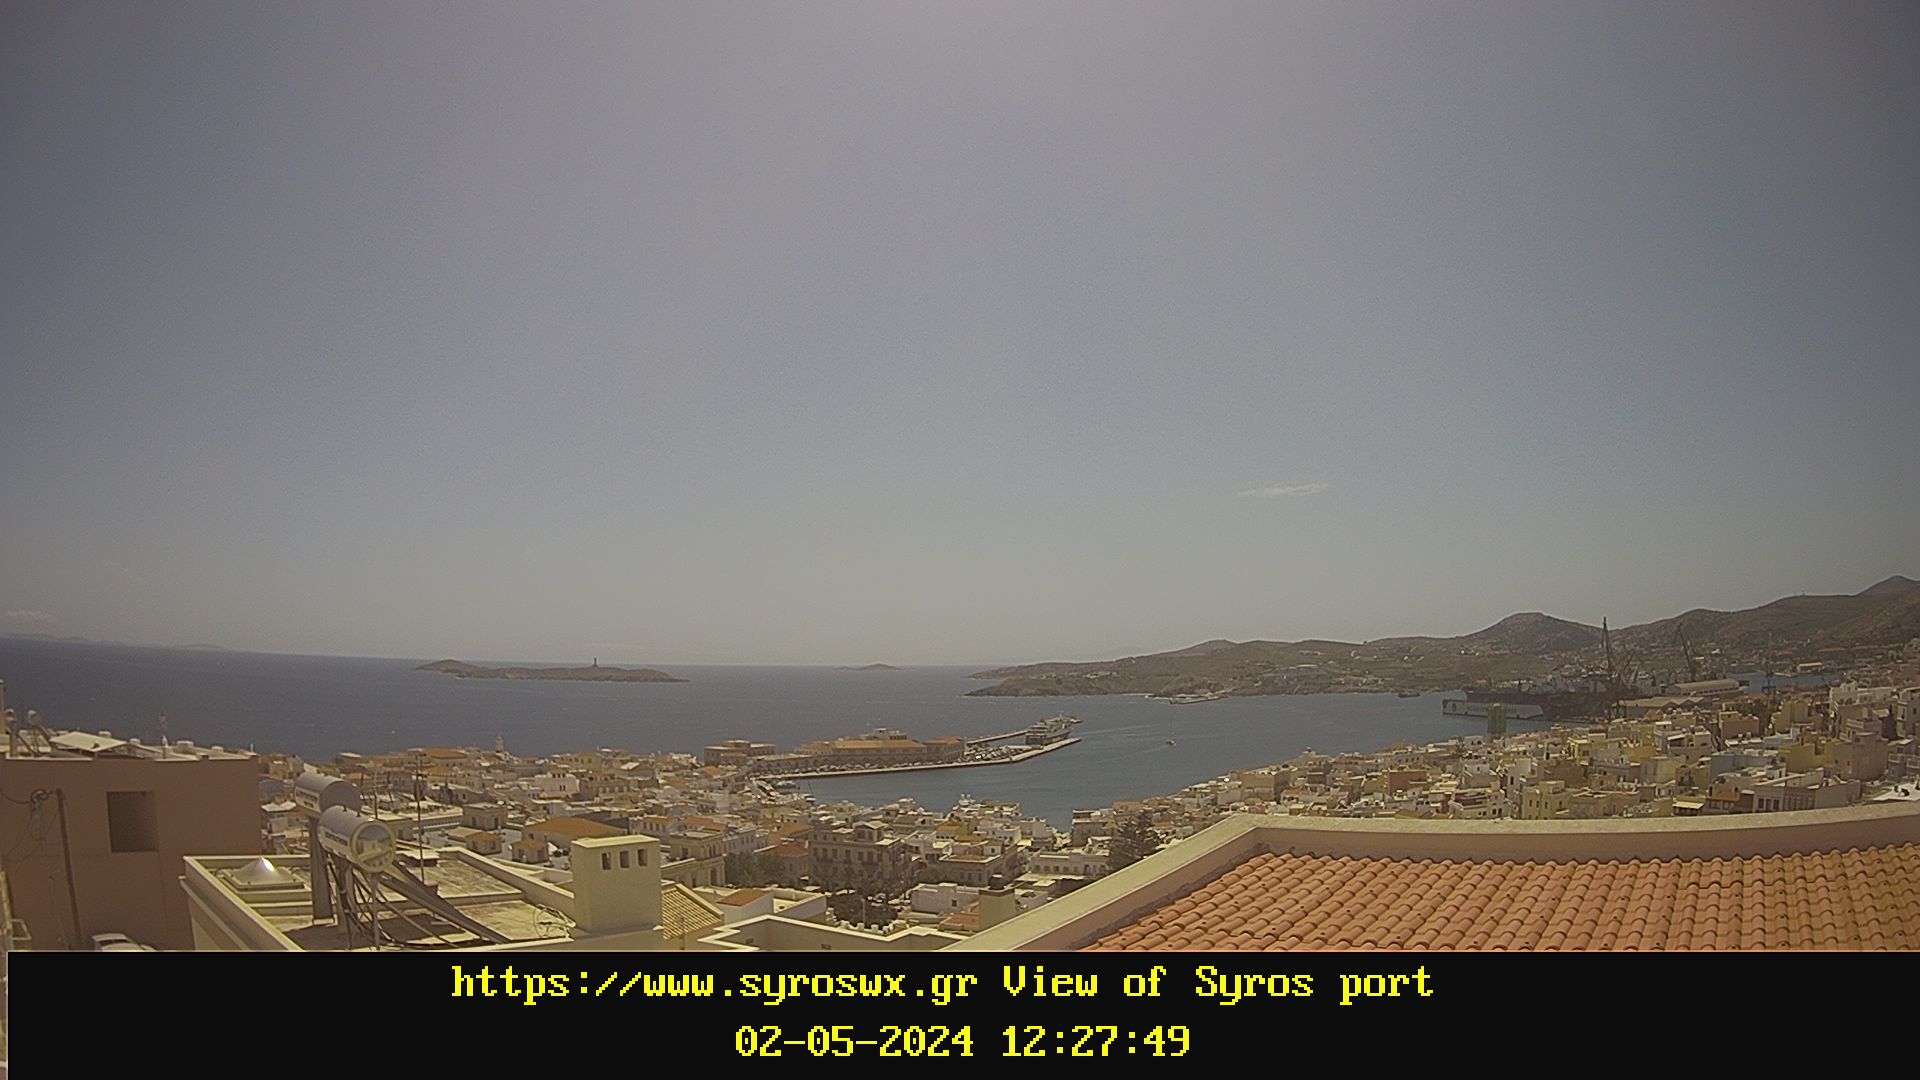 Ζωντανή εικόνα με το λιμάνι της Σύρου